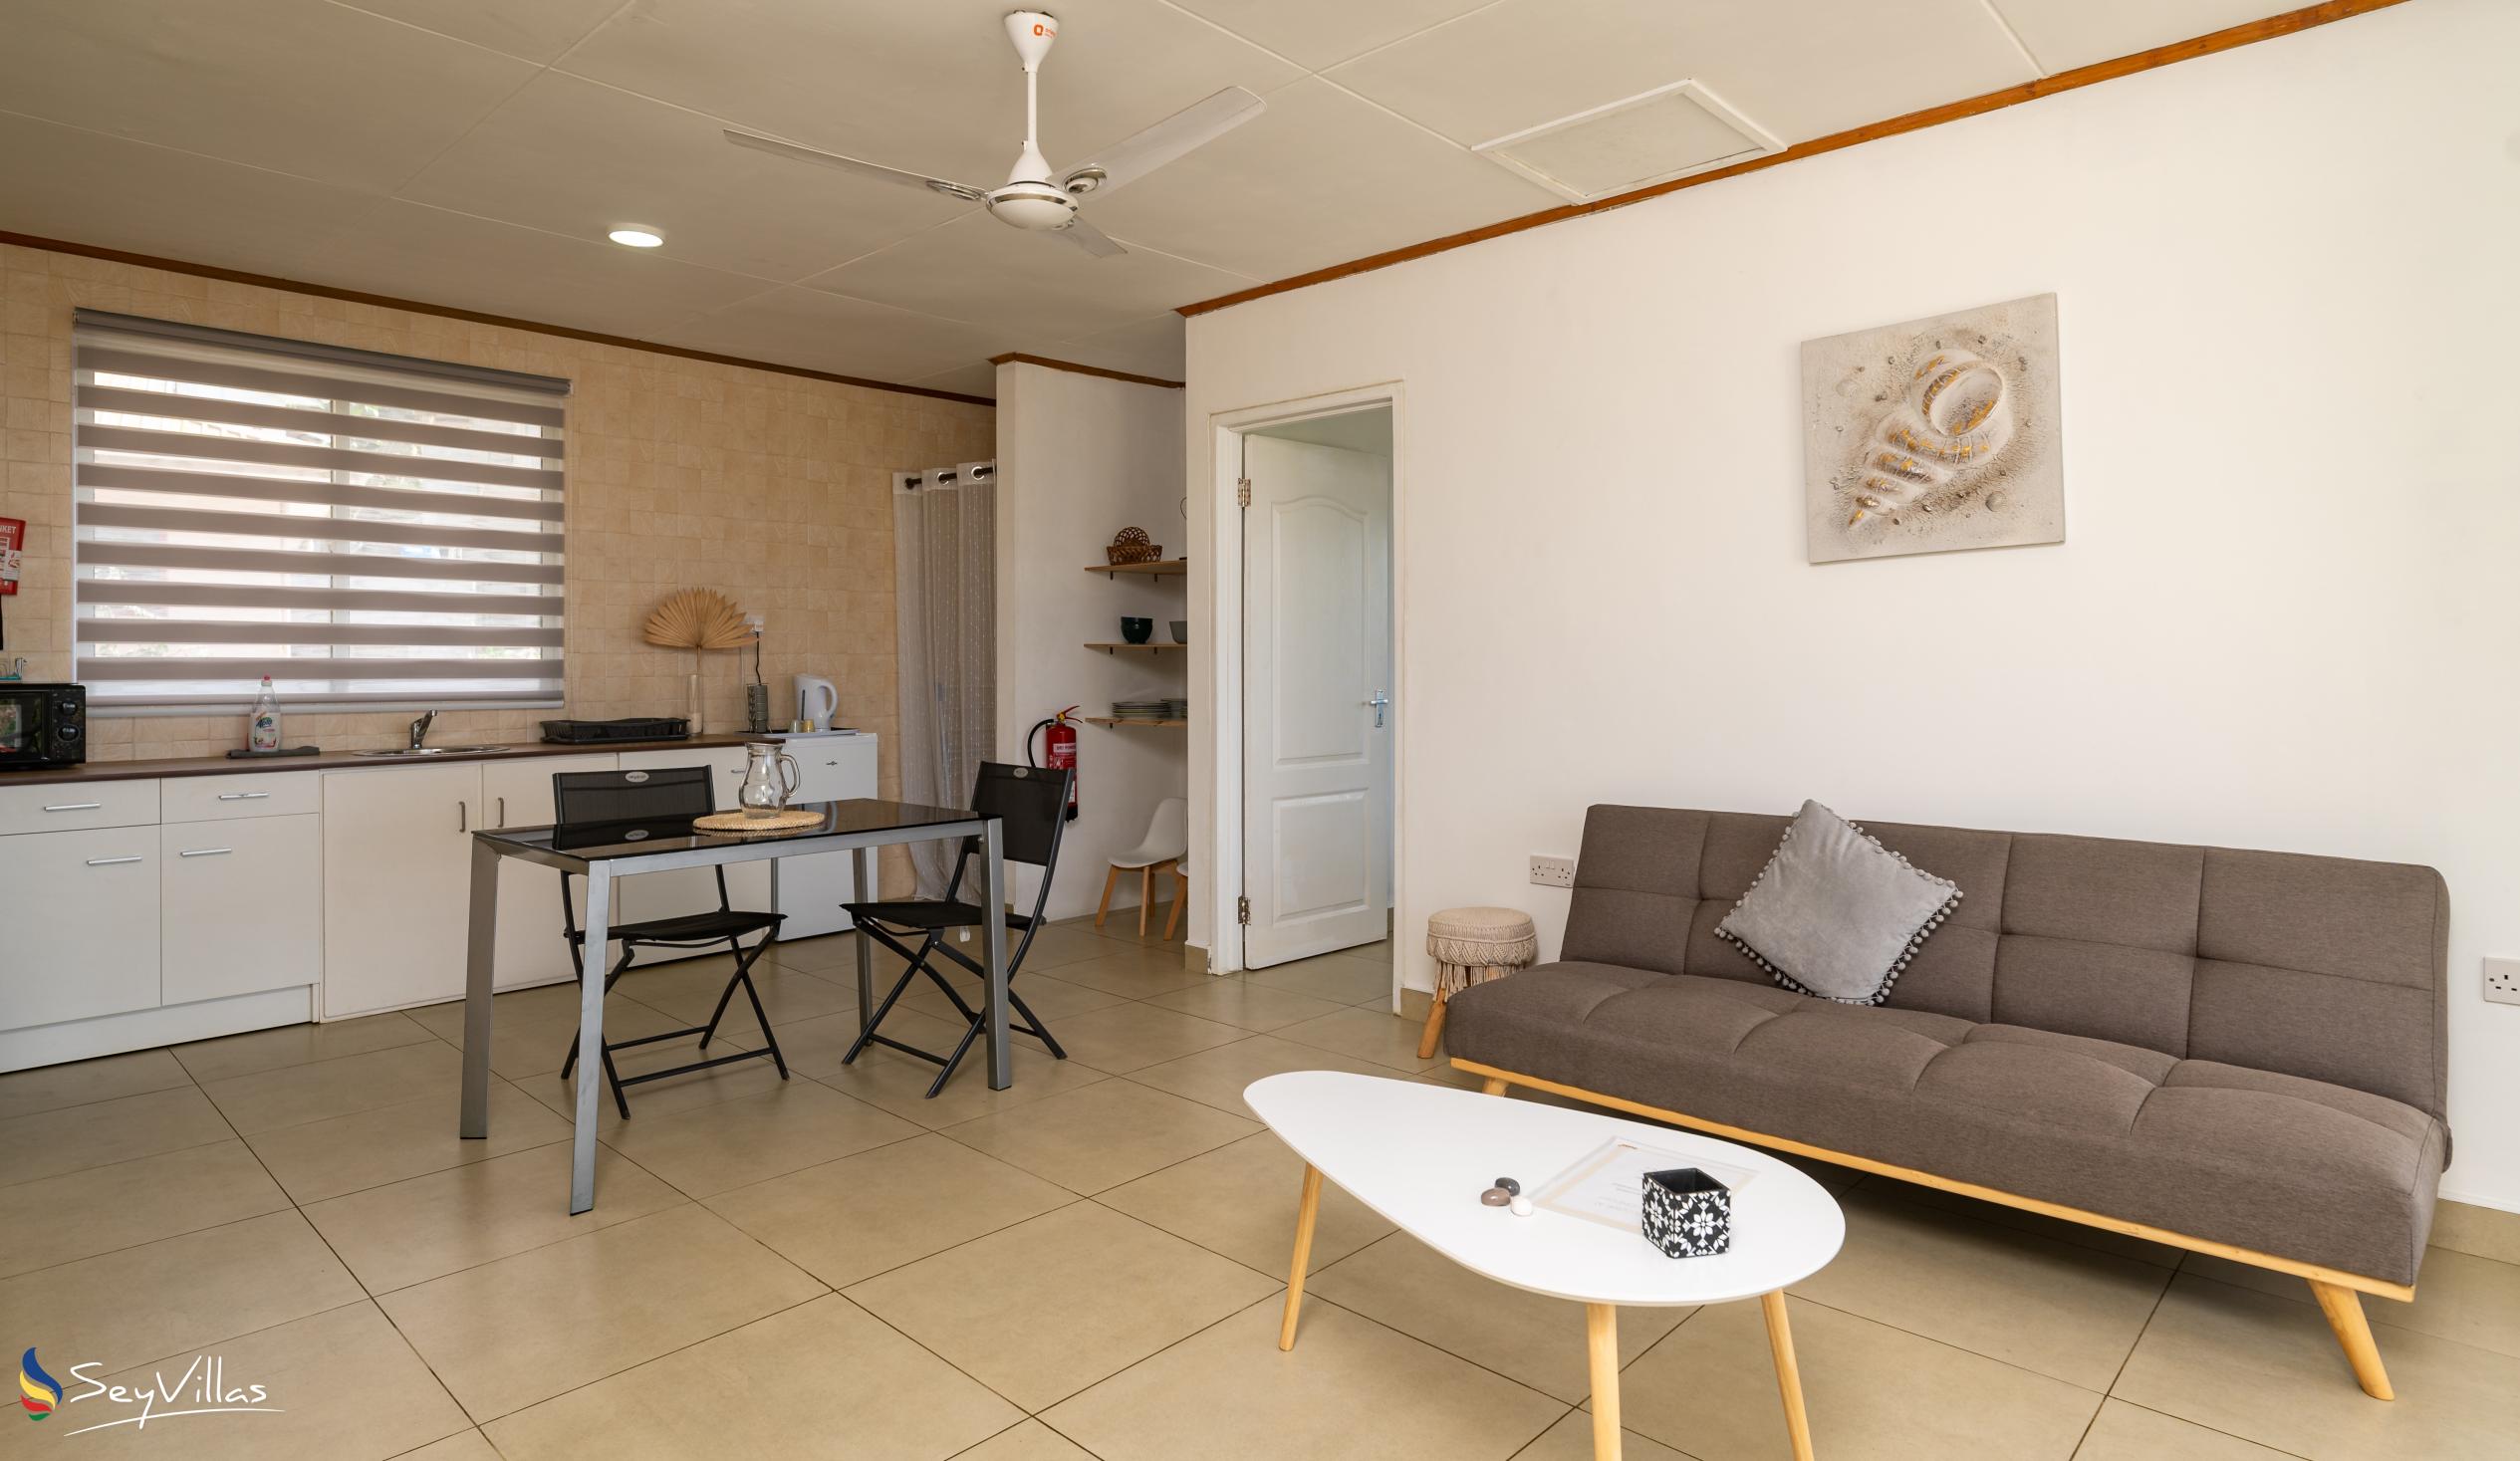 Photo 73: Cap Confort - 1-Bedroom Apartment - Mahé (Seychelles)